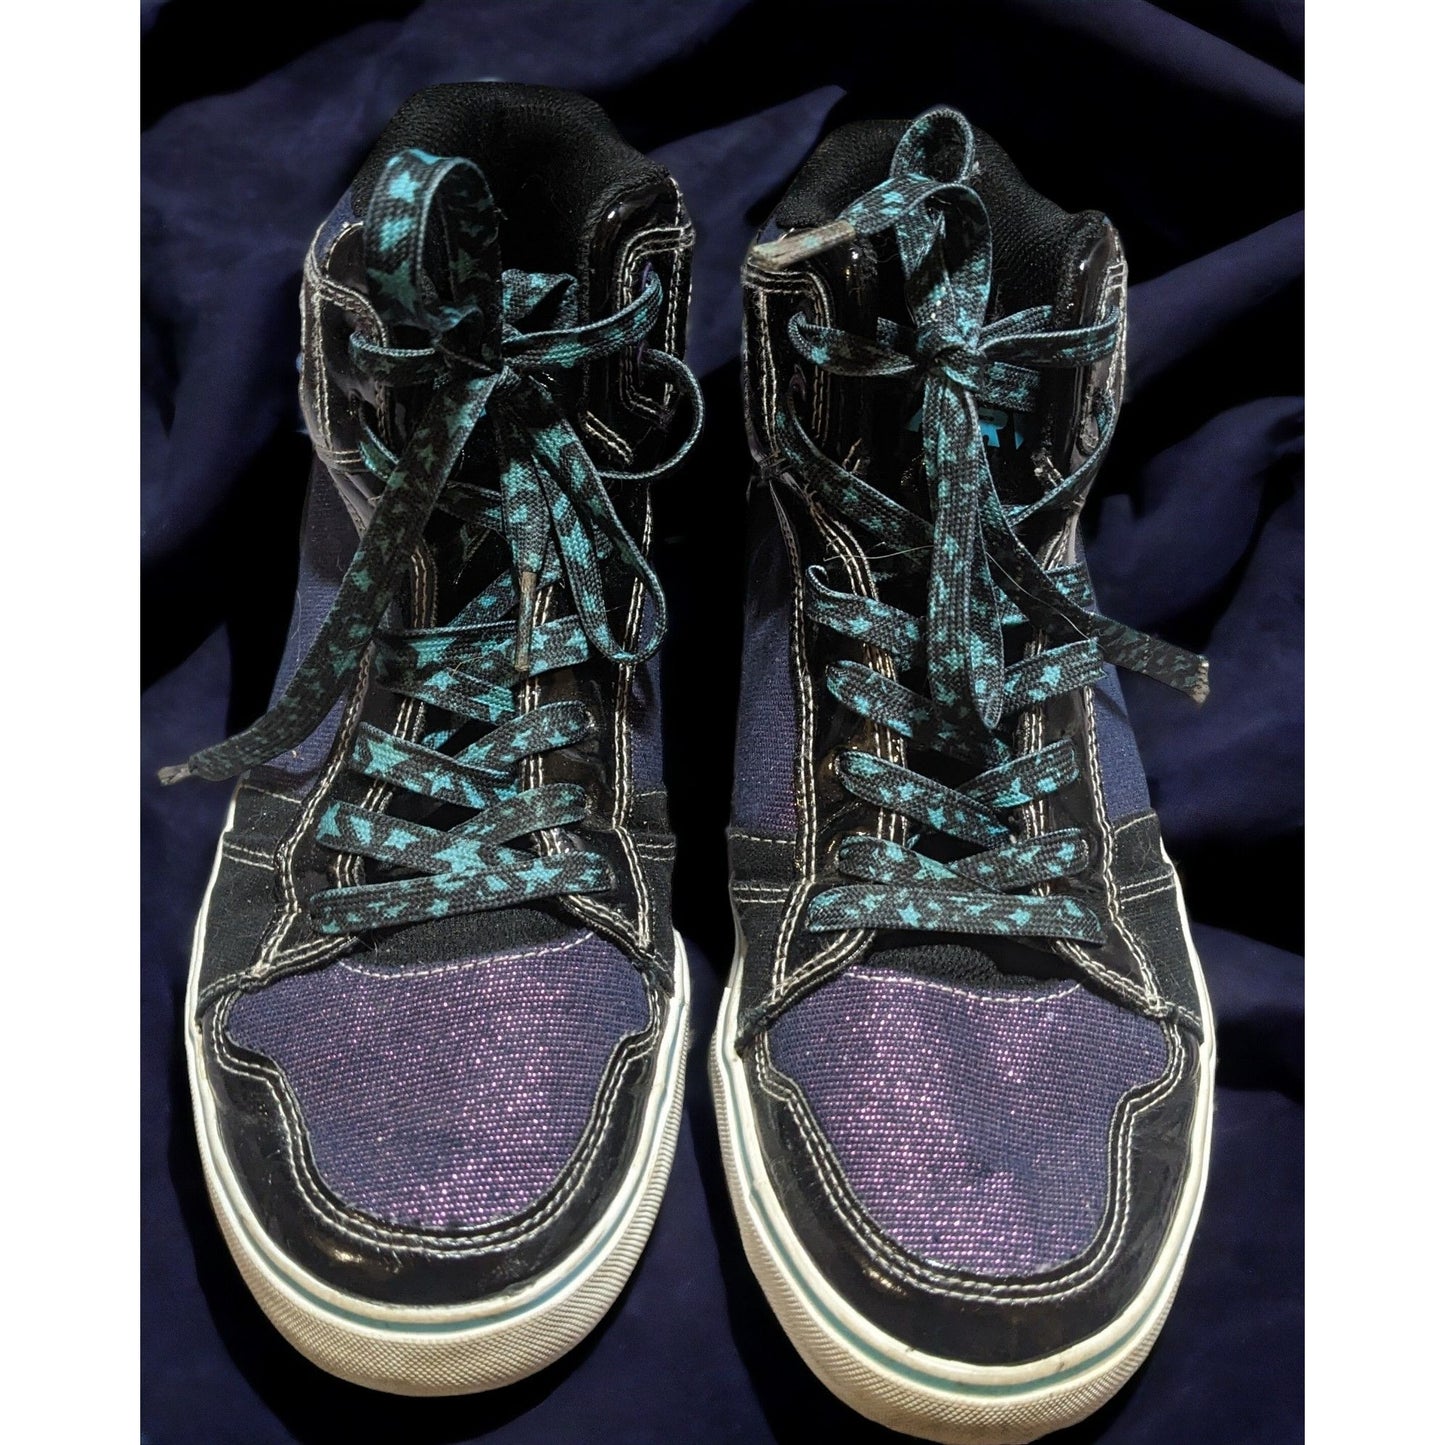 Airwalk Black And Metallic Purple Sneakers